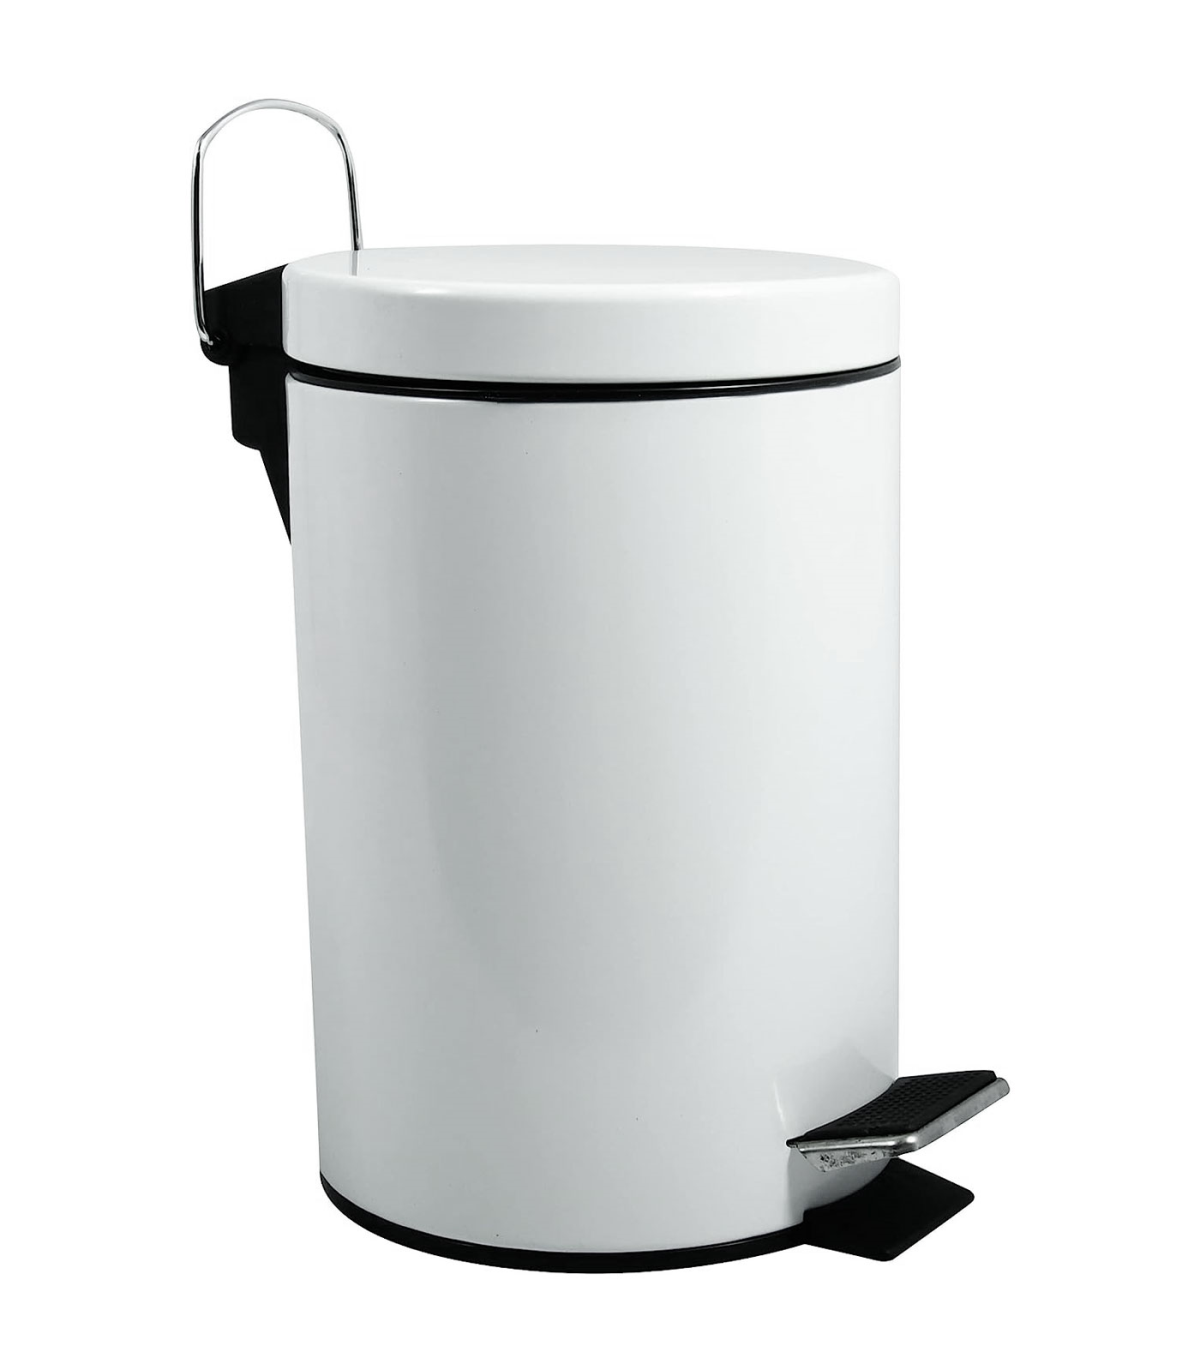 Tradineur - Papelera de plástico con tapa basculante, cubo basura ligero,  resistente, baño, cocina, oficina, fabricada en España